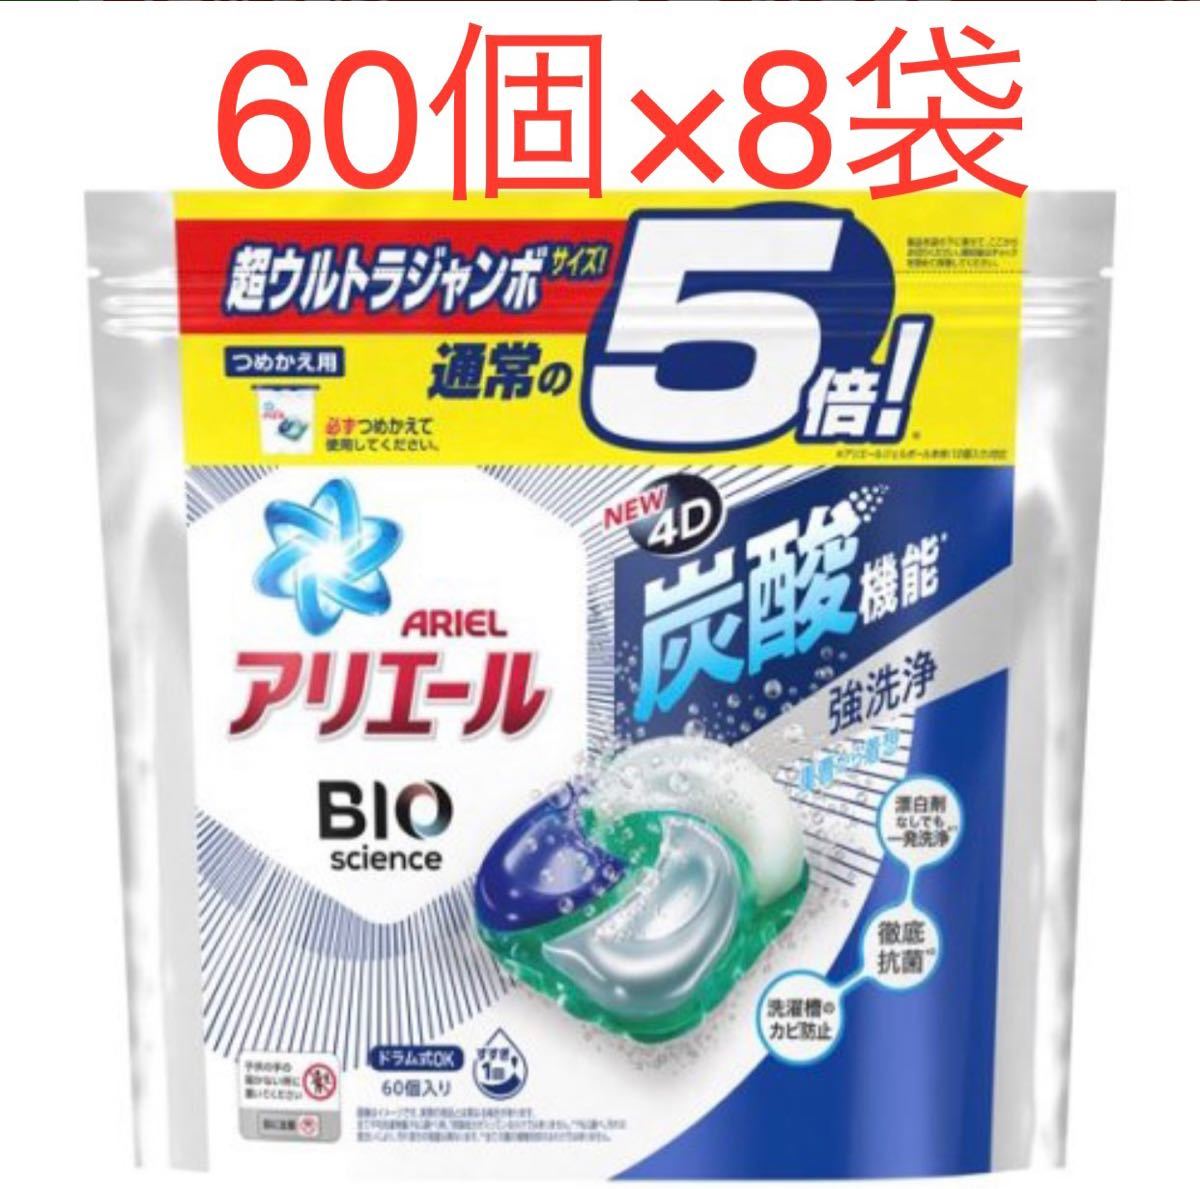 アリエール ジェルボール4D 洗濯洗剤 清潔で爽やかな香り 詰め替え(60個入*8袋セット)